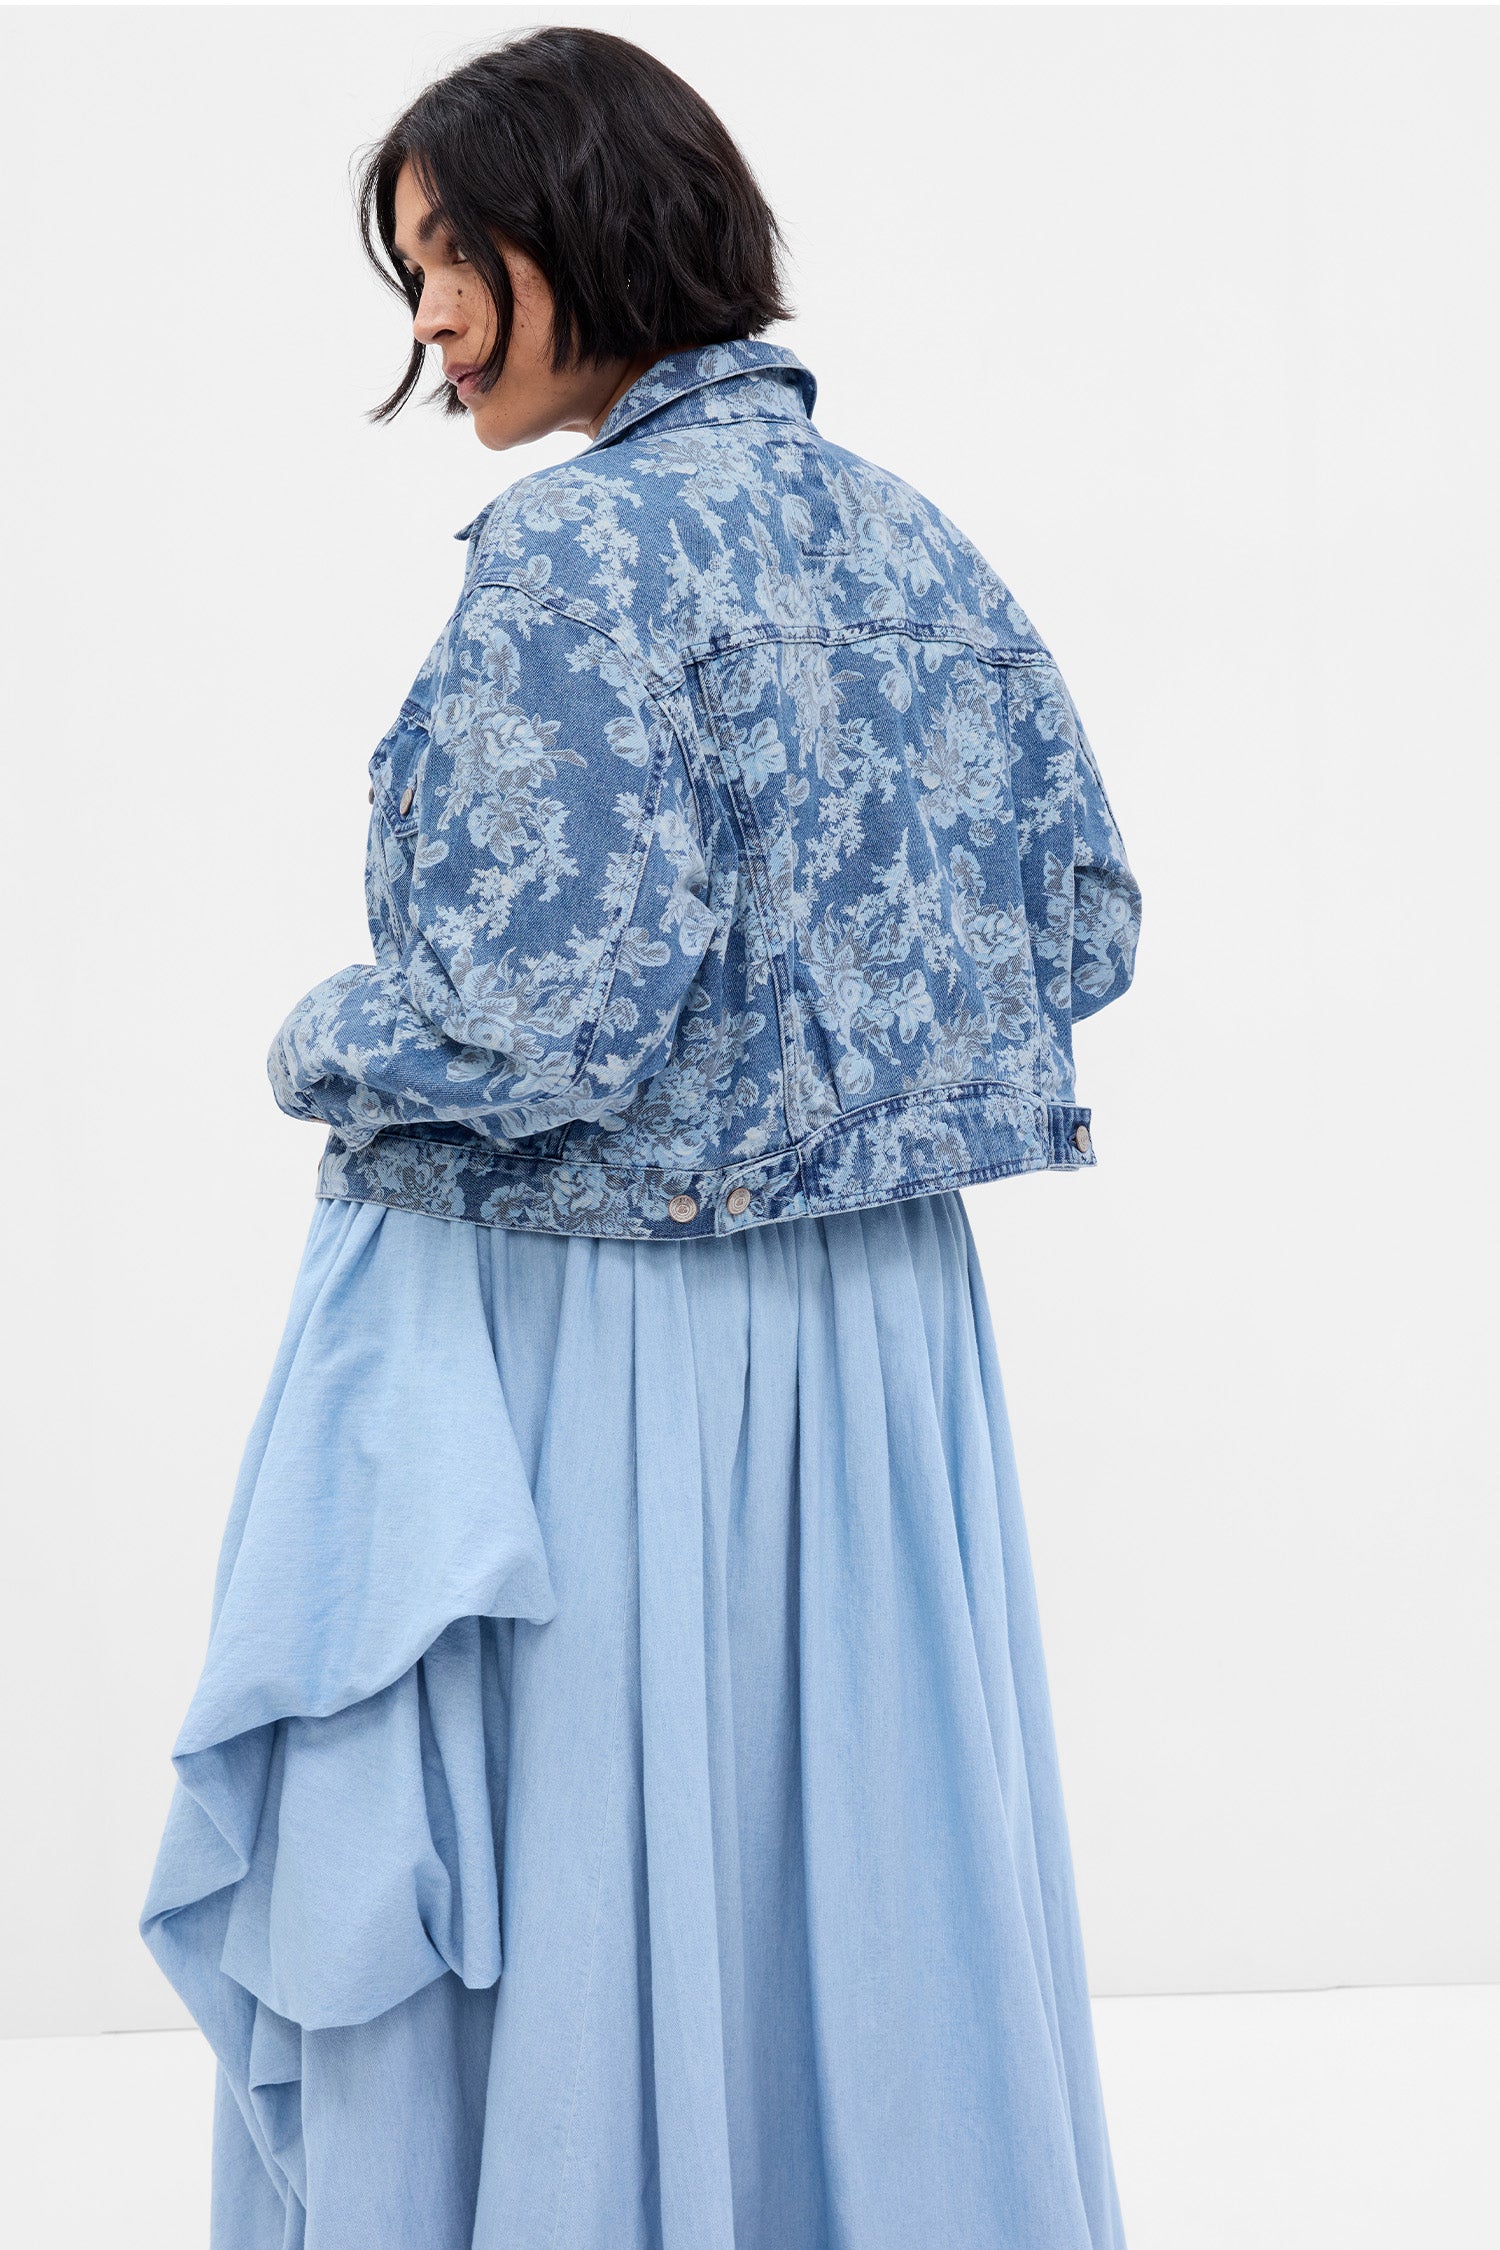 Back image of model wearing blue denim floral jacket